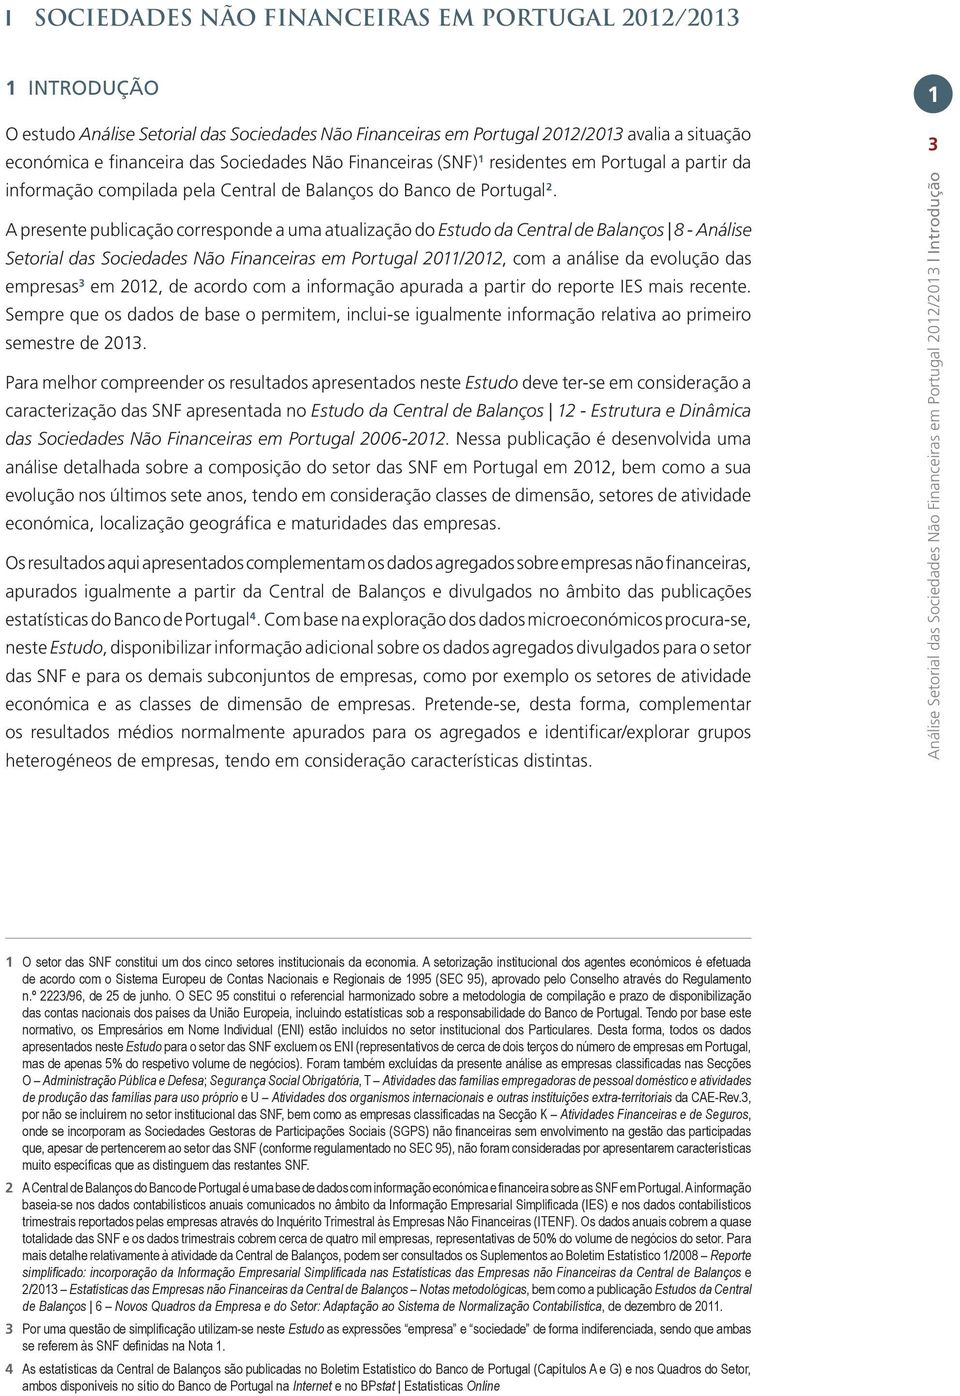 A presente publicação corresponde a uma atualização do Estudo da Central de Balanços 8 - Análise Setorial das Sociedades Não Financeiras em Portugal 2011/2012, com a análise da evolução das empresas